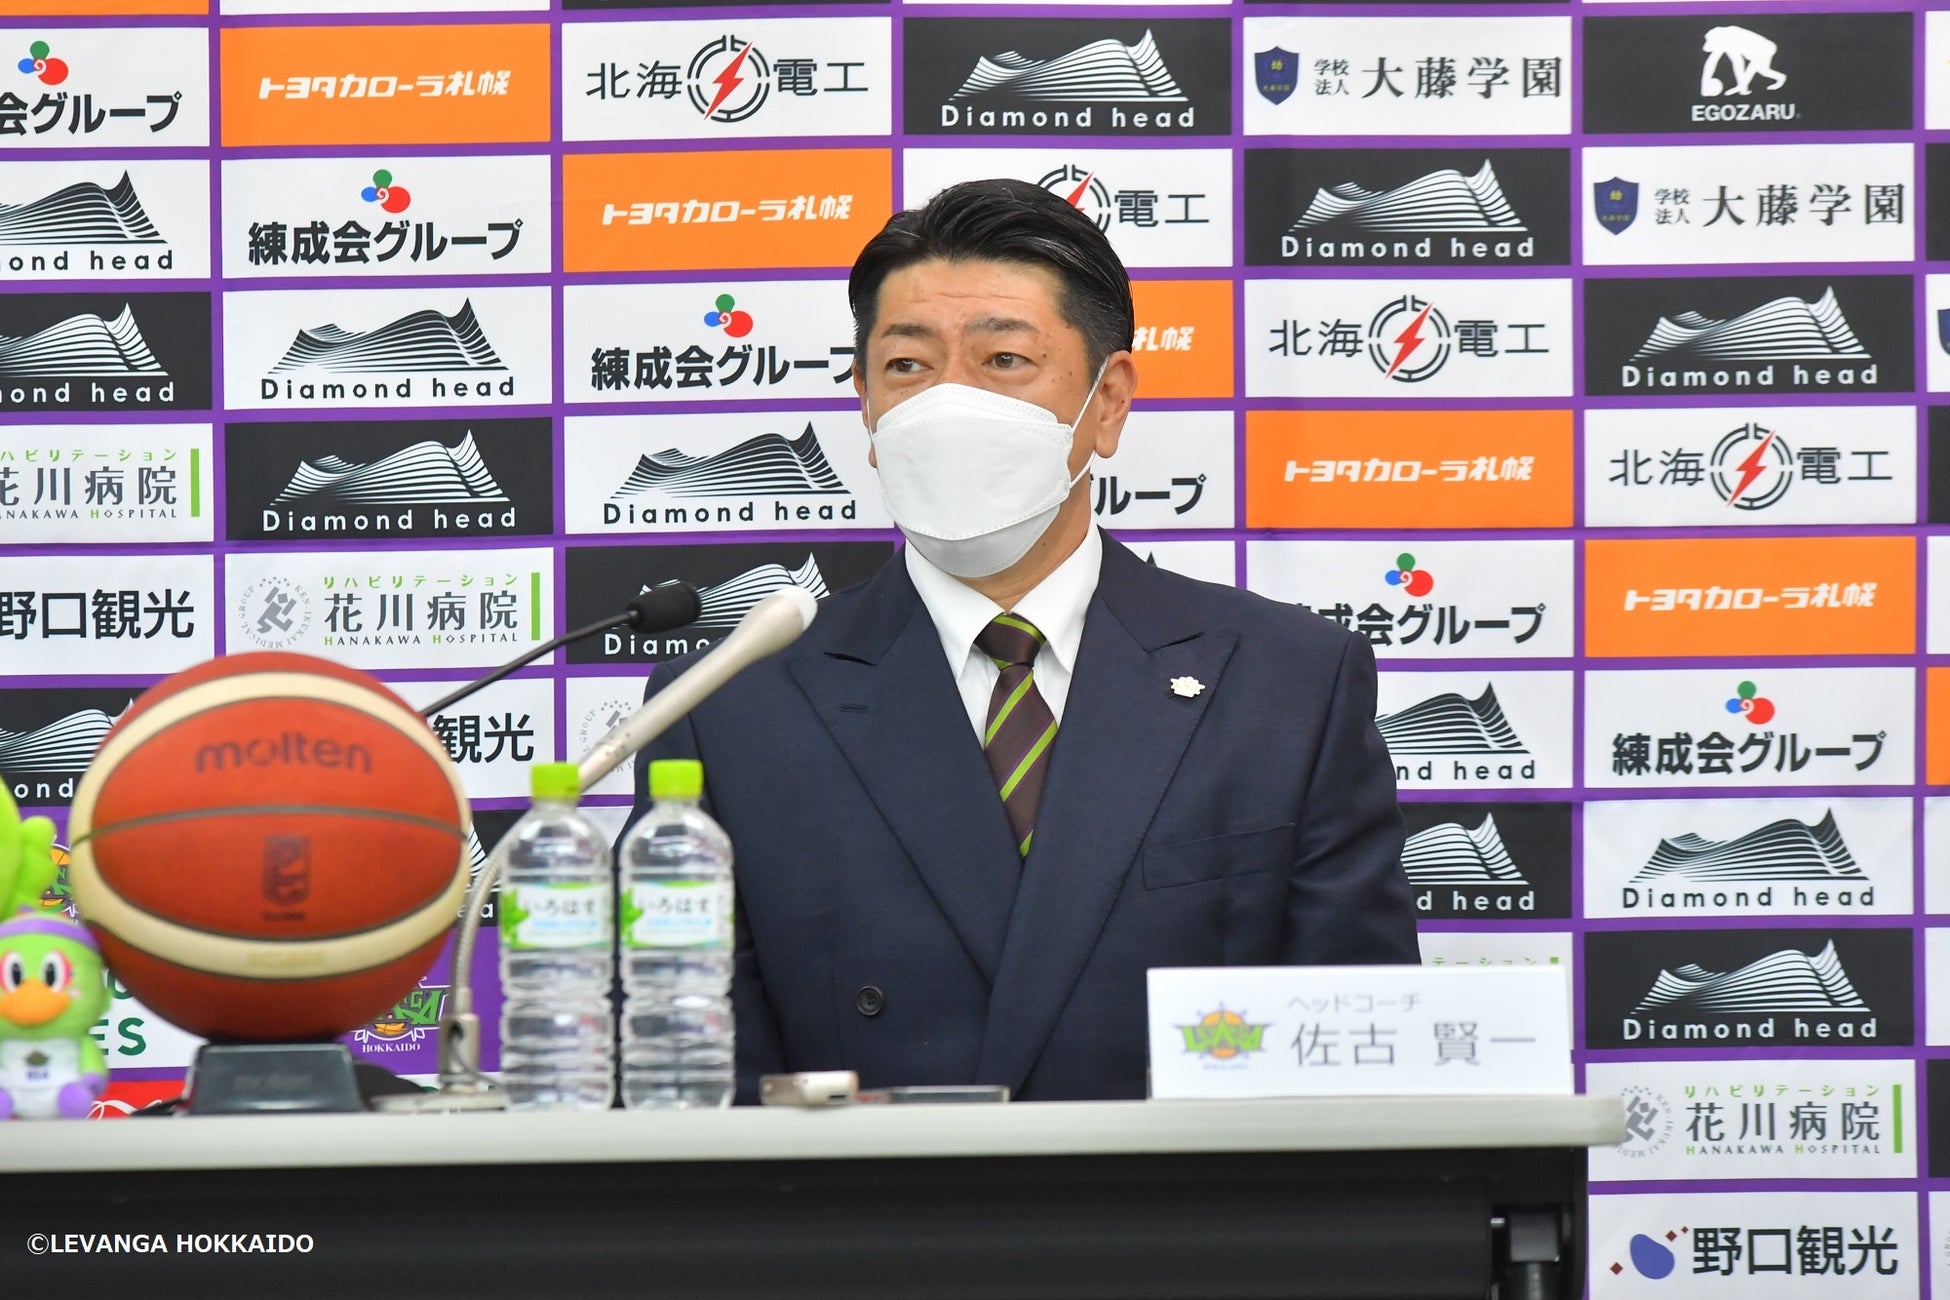 日本人3人目。165か国加盟の、生涯スポーツを推進する国際統括団体「TAFISA」理事に、玉澤 正徳（笹川スポーツ財団）が就任